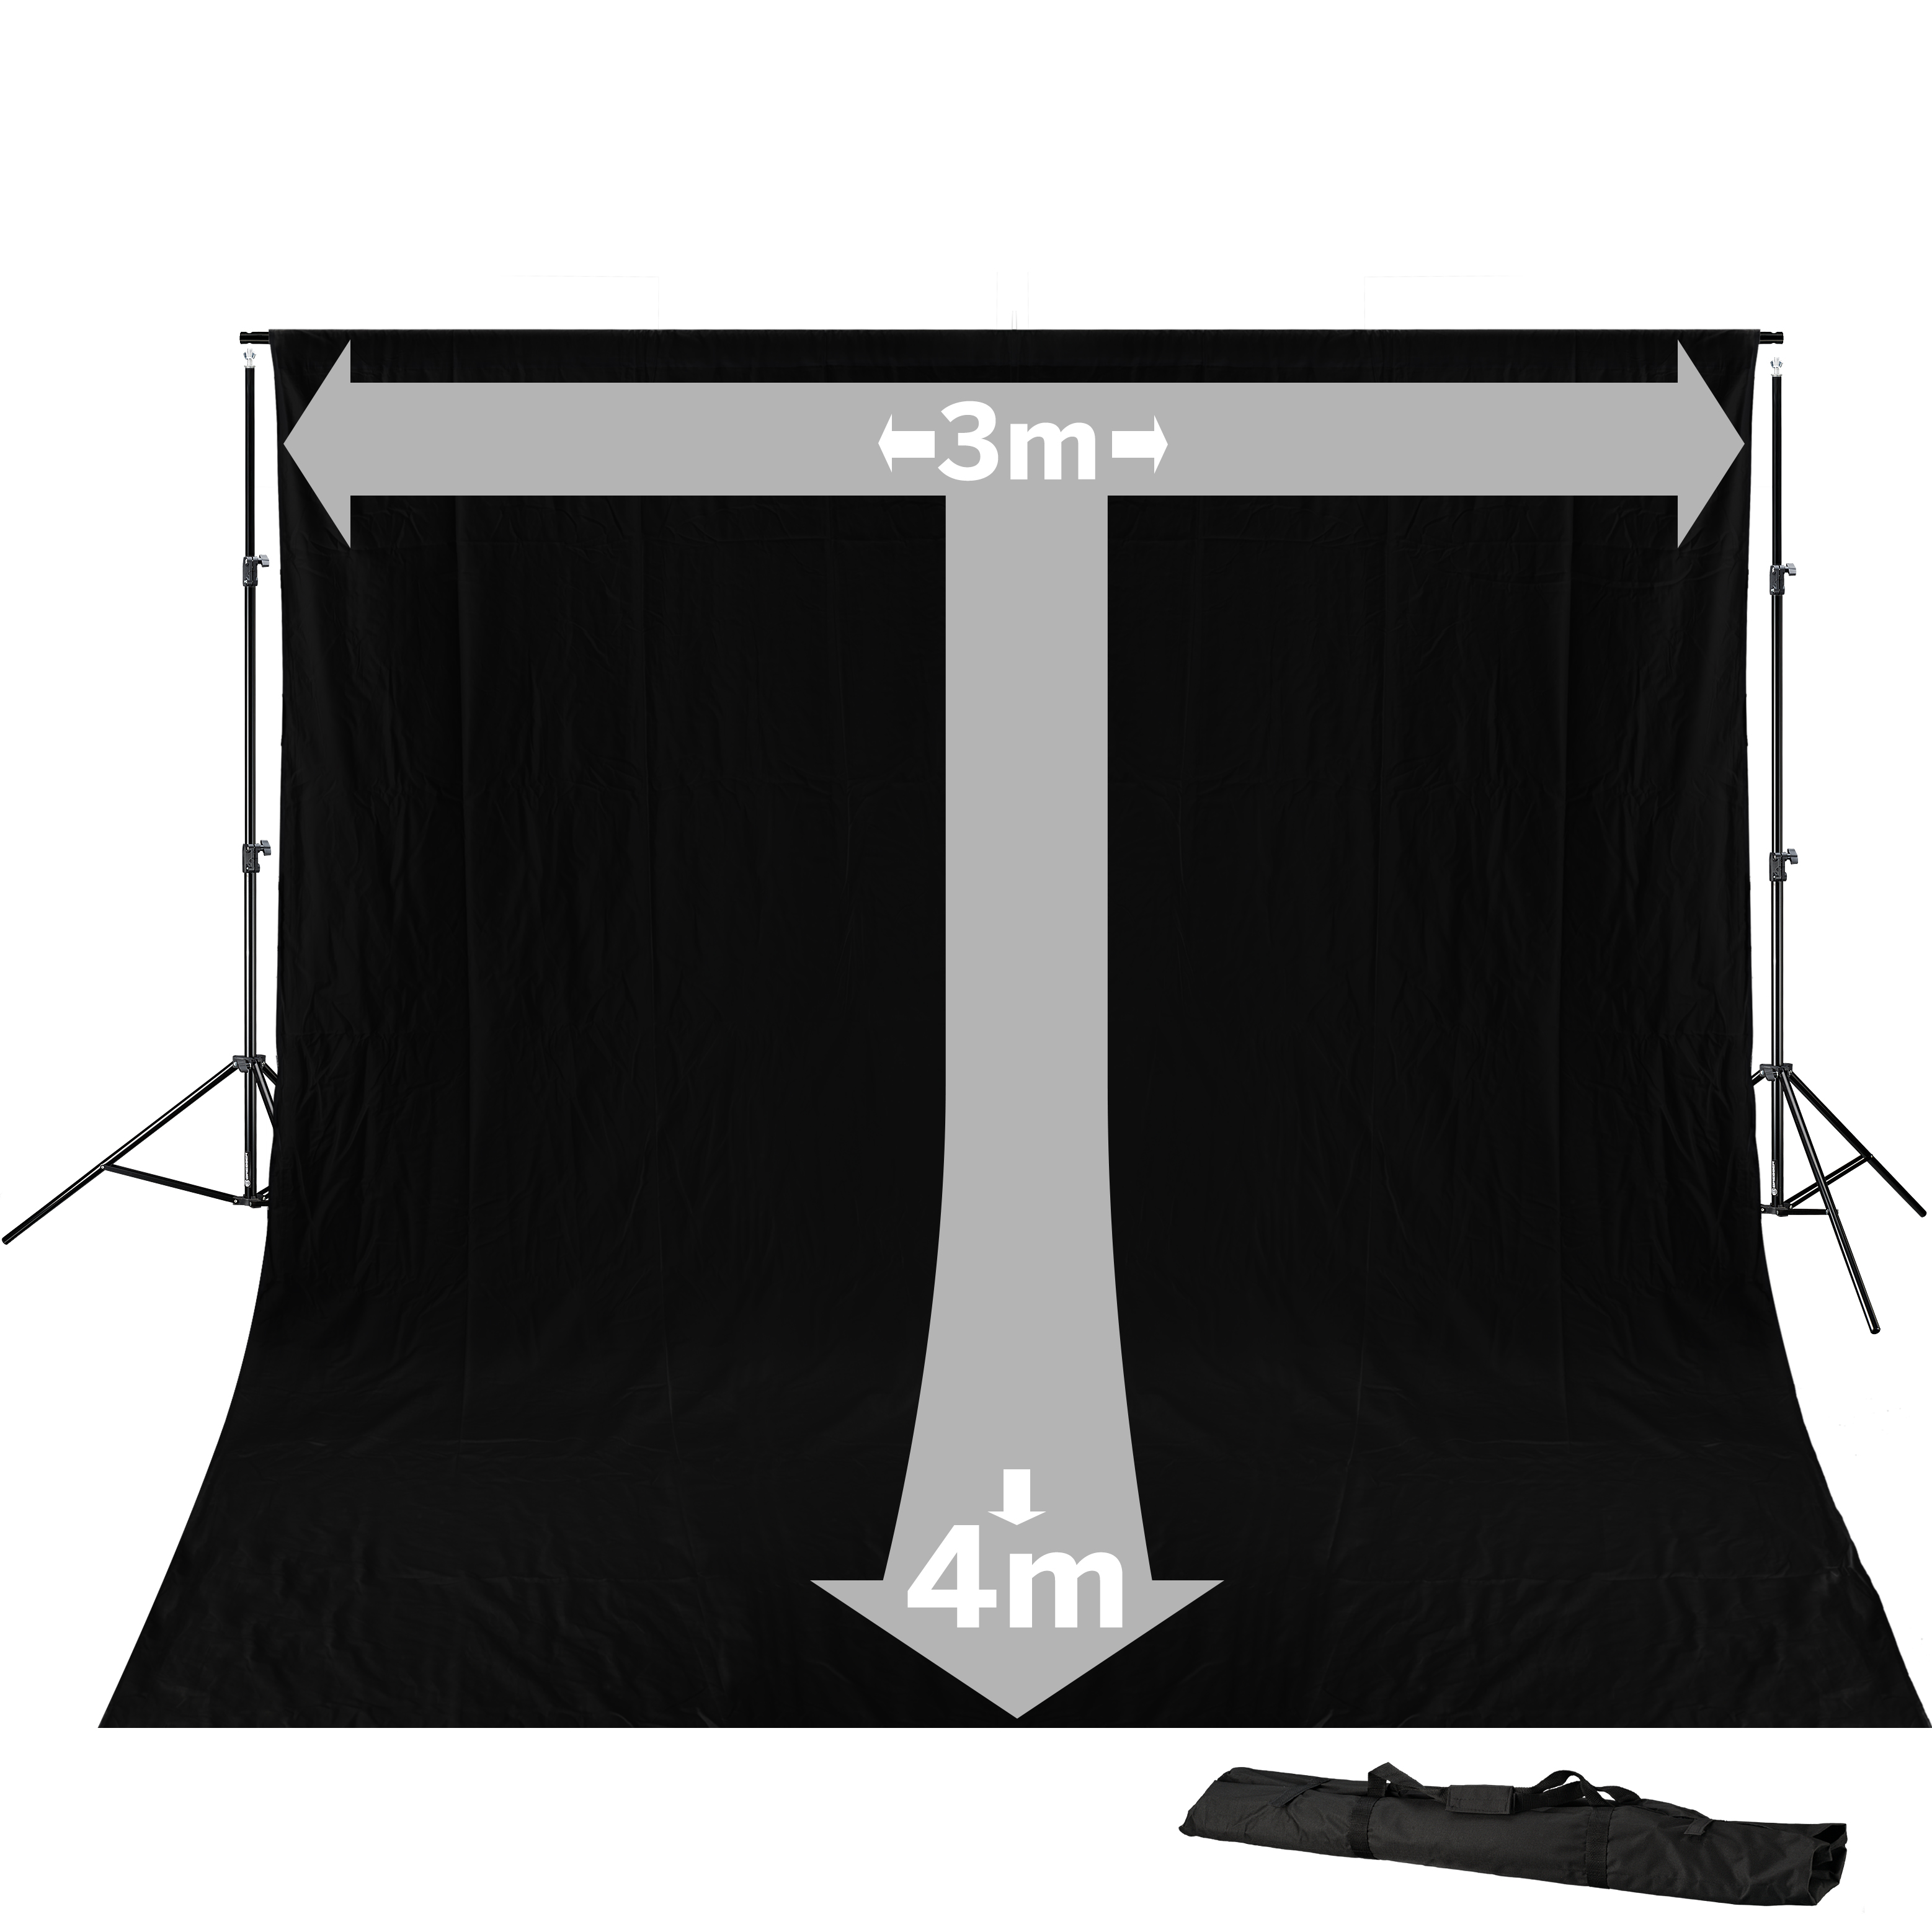 BRESSER BR-D23 Background System + Background Cloth 3 x 4m Black